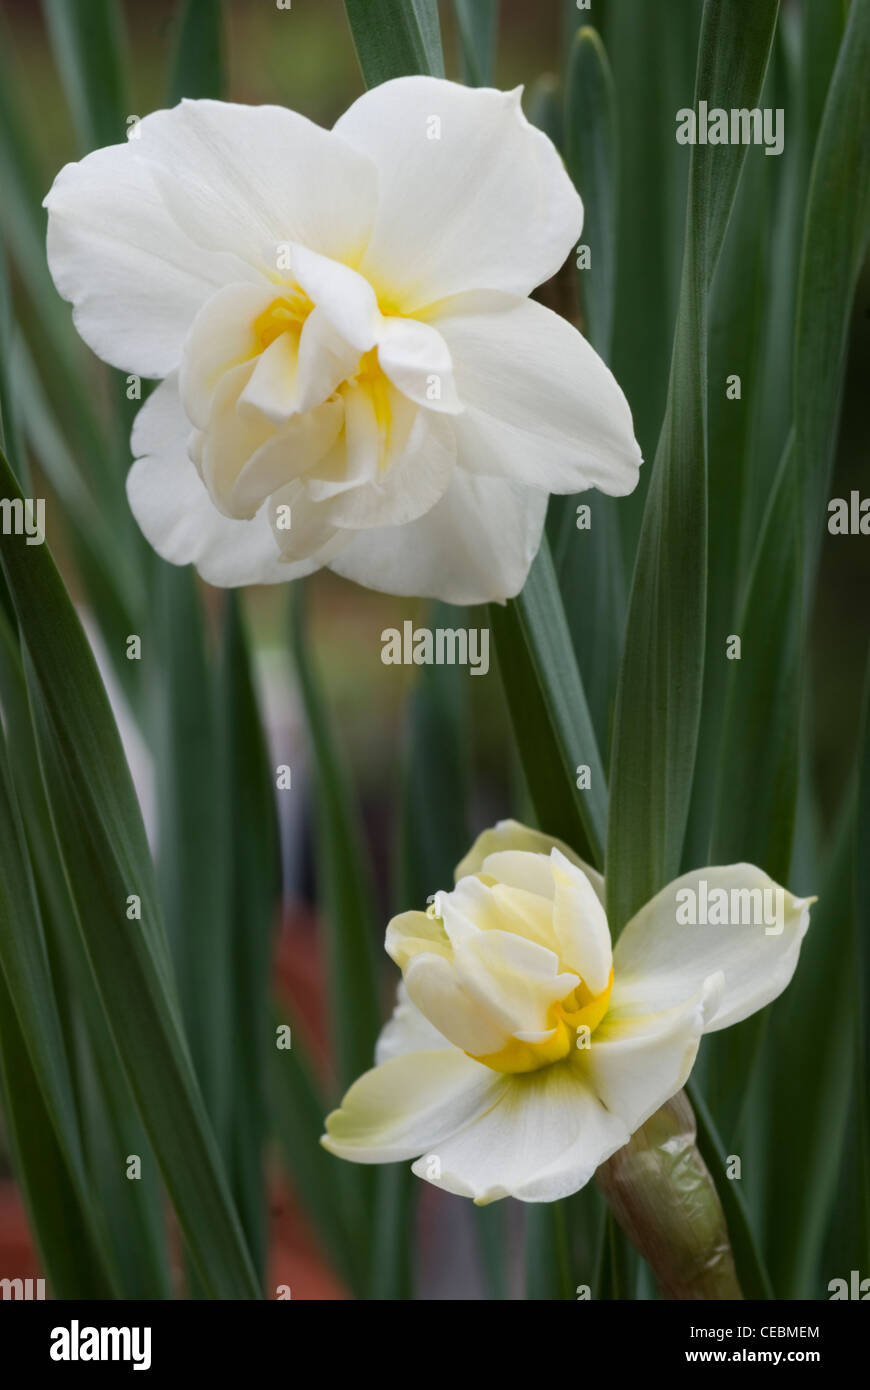 Narcissus cheerfulness white Stock Photo